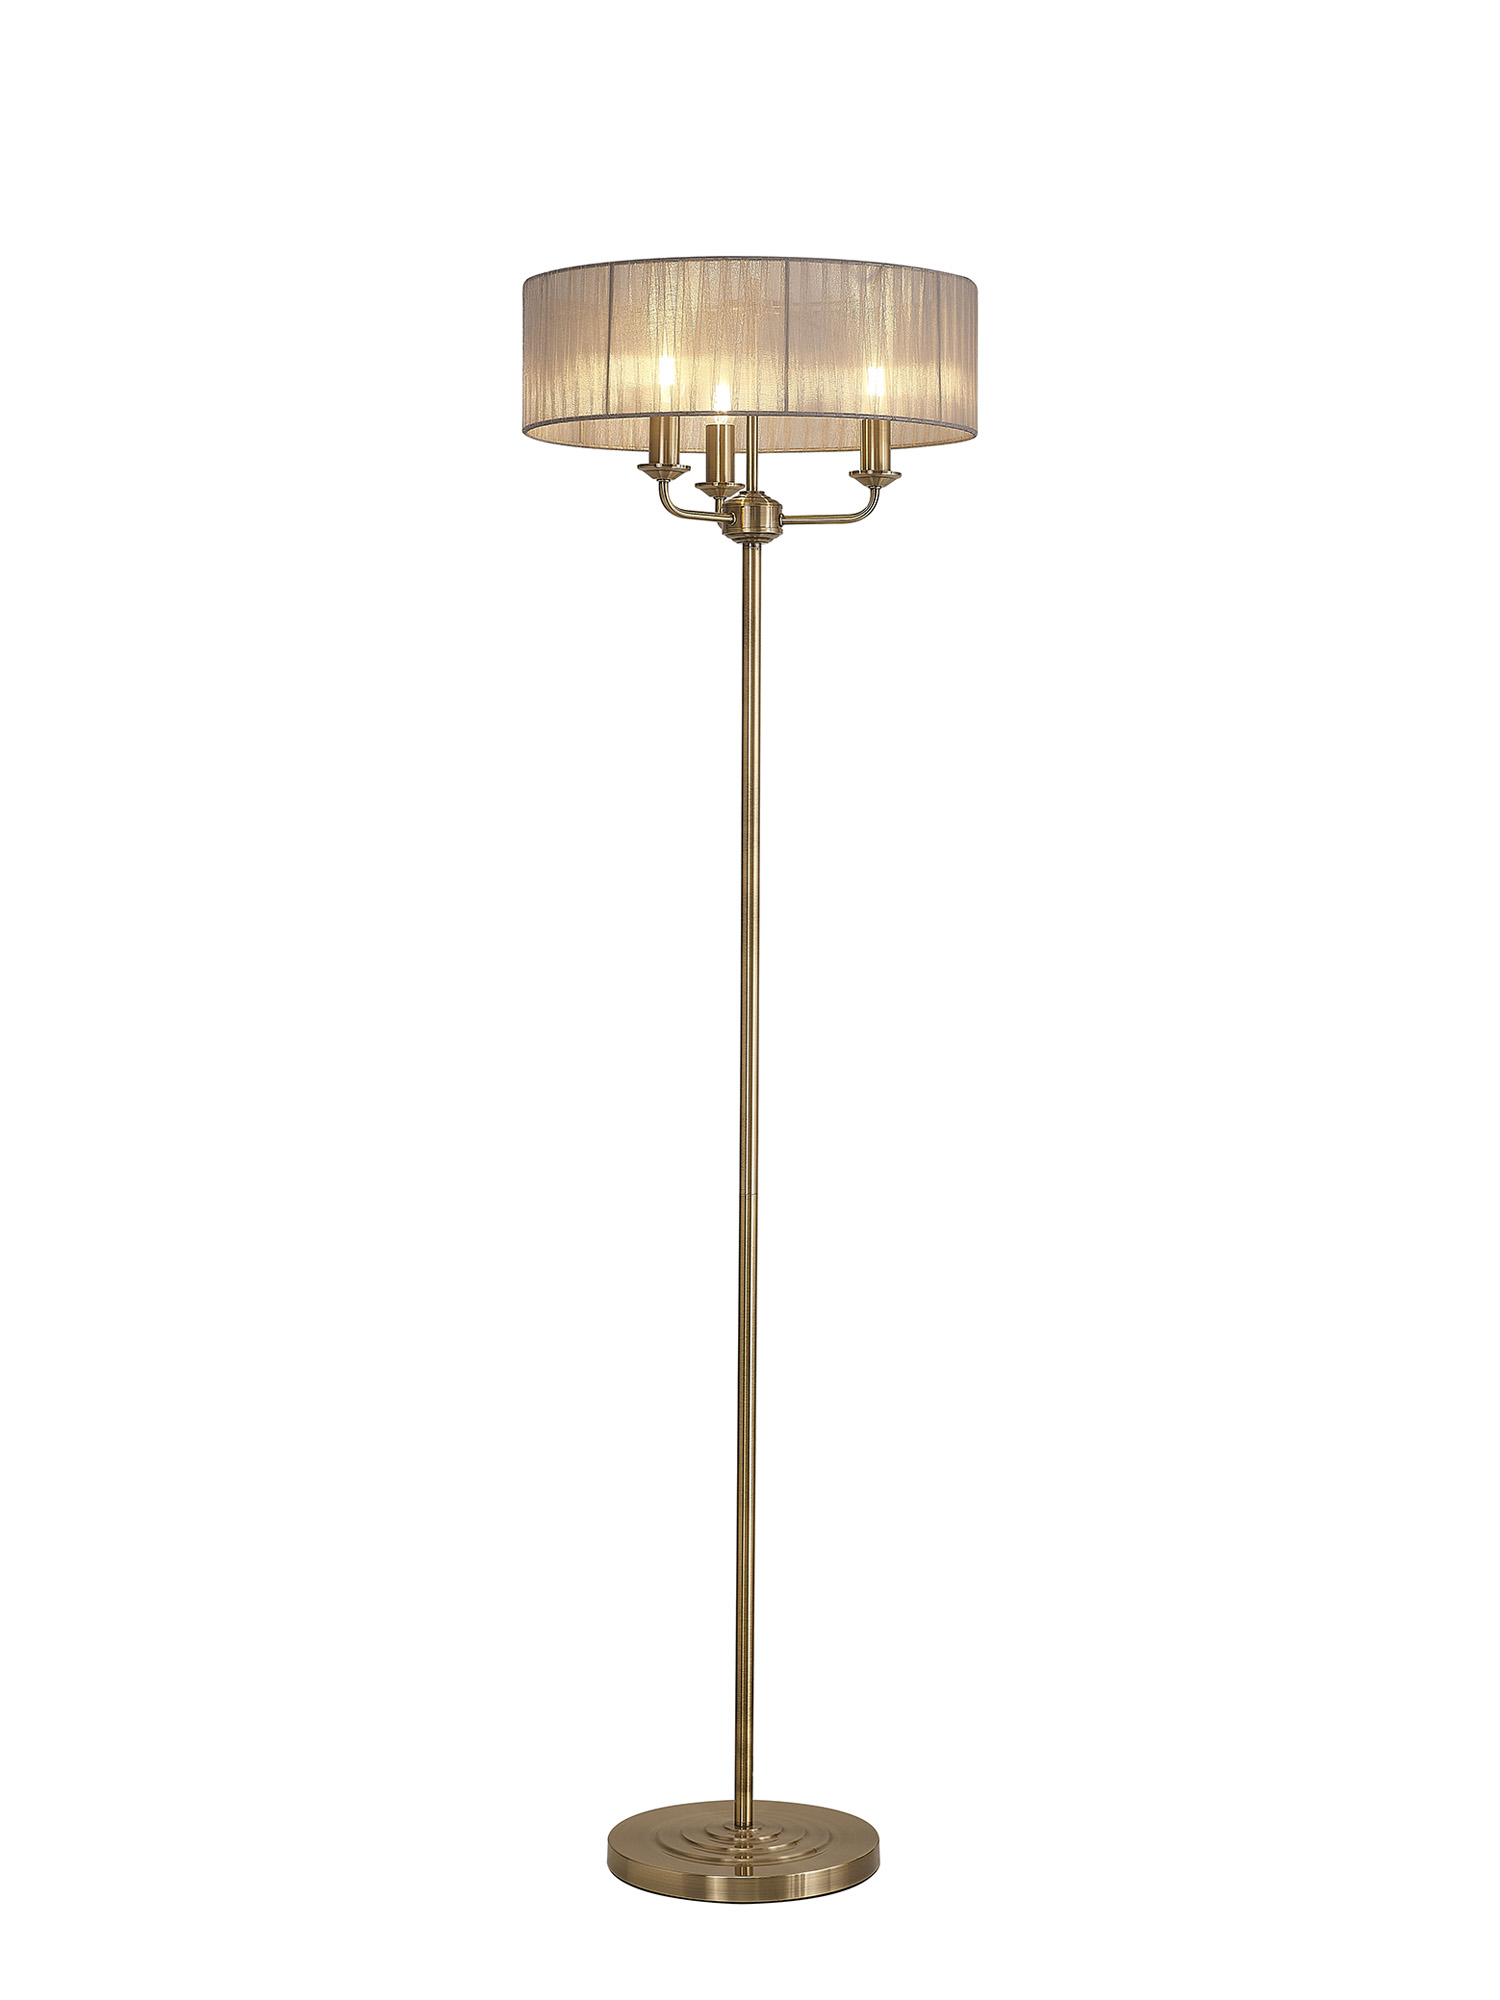 DK0910  Banyan 45cm 3 Light Floor Lamp Antique Brass, Grey